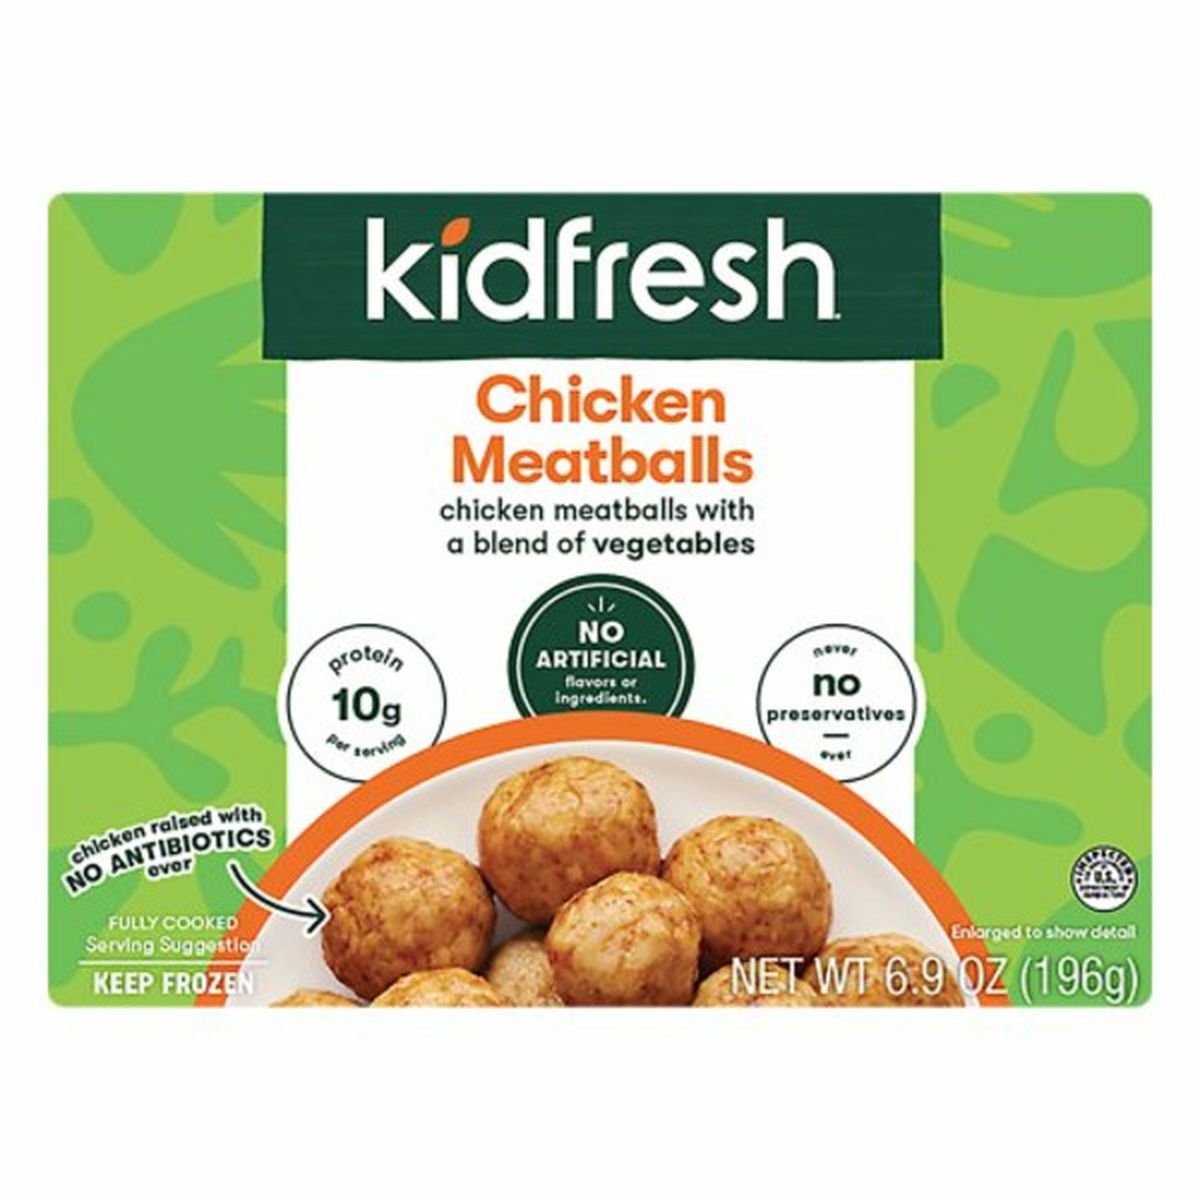 Calories in Kidfresh Chicken Meatballs